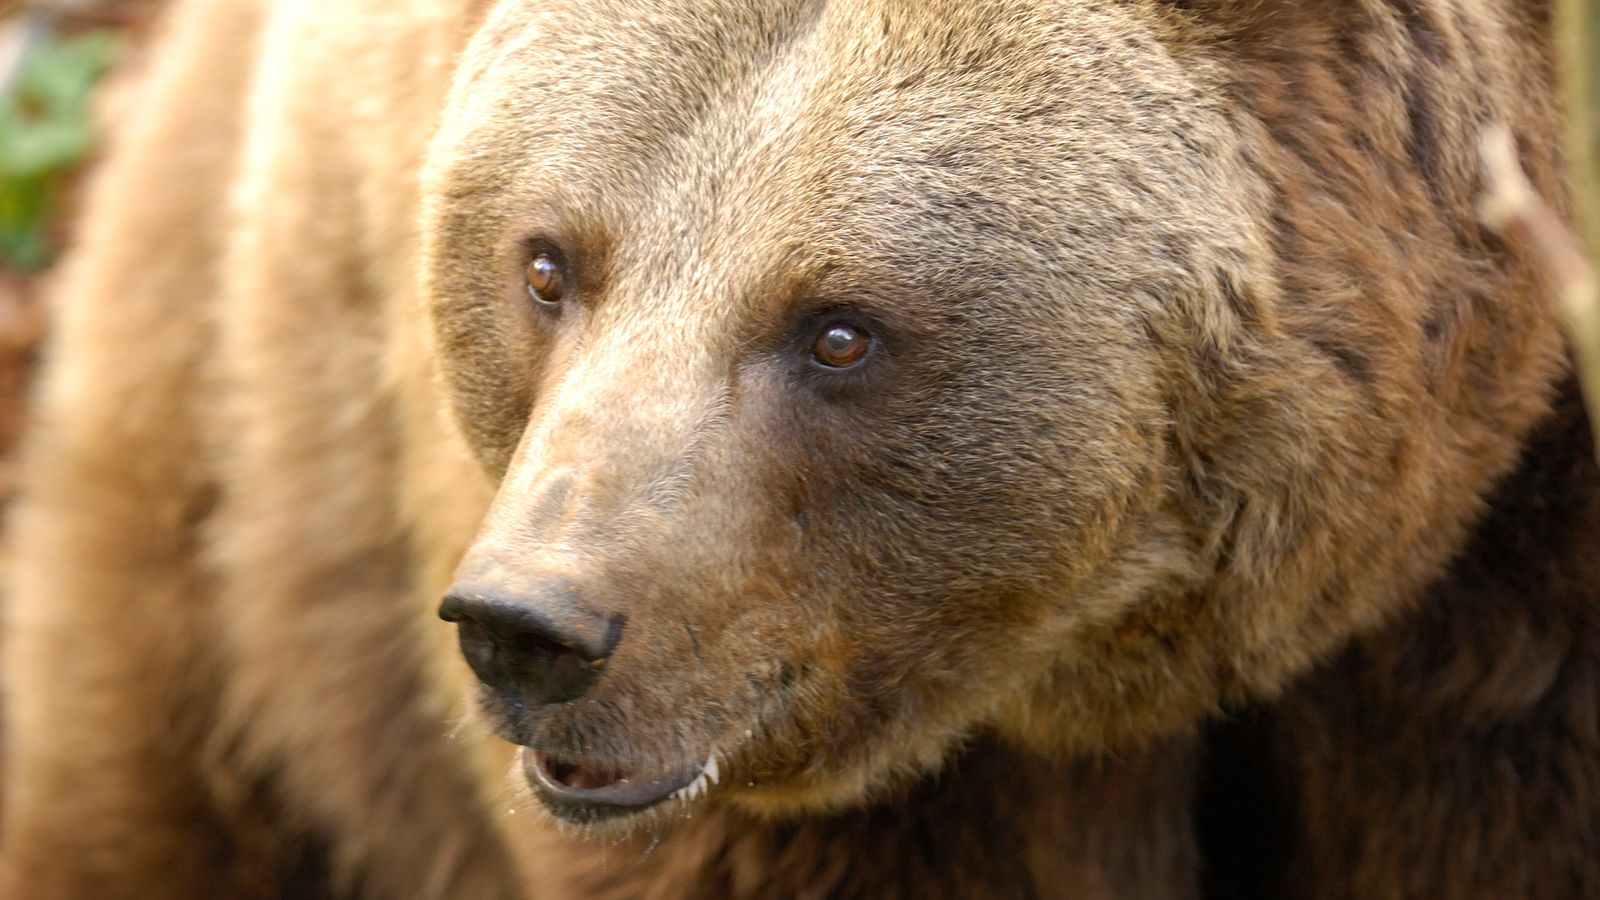 الدب الذي قتل عداءًا تم القبض عليه في إيطاليا احتجاجًا على مصير حيوان |  اخبار العالم